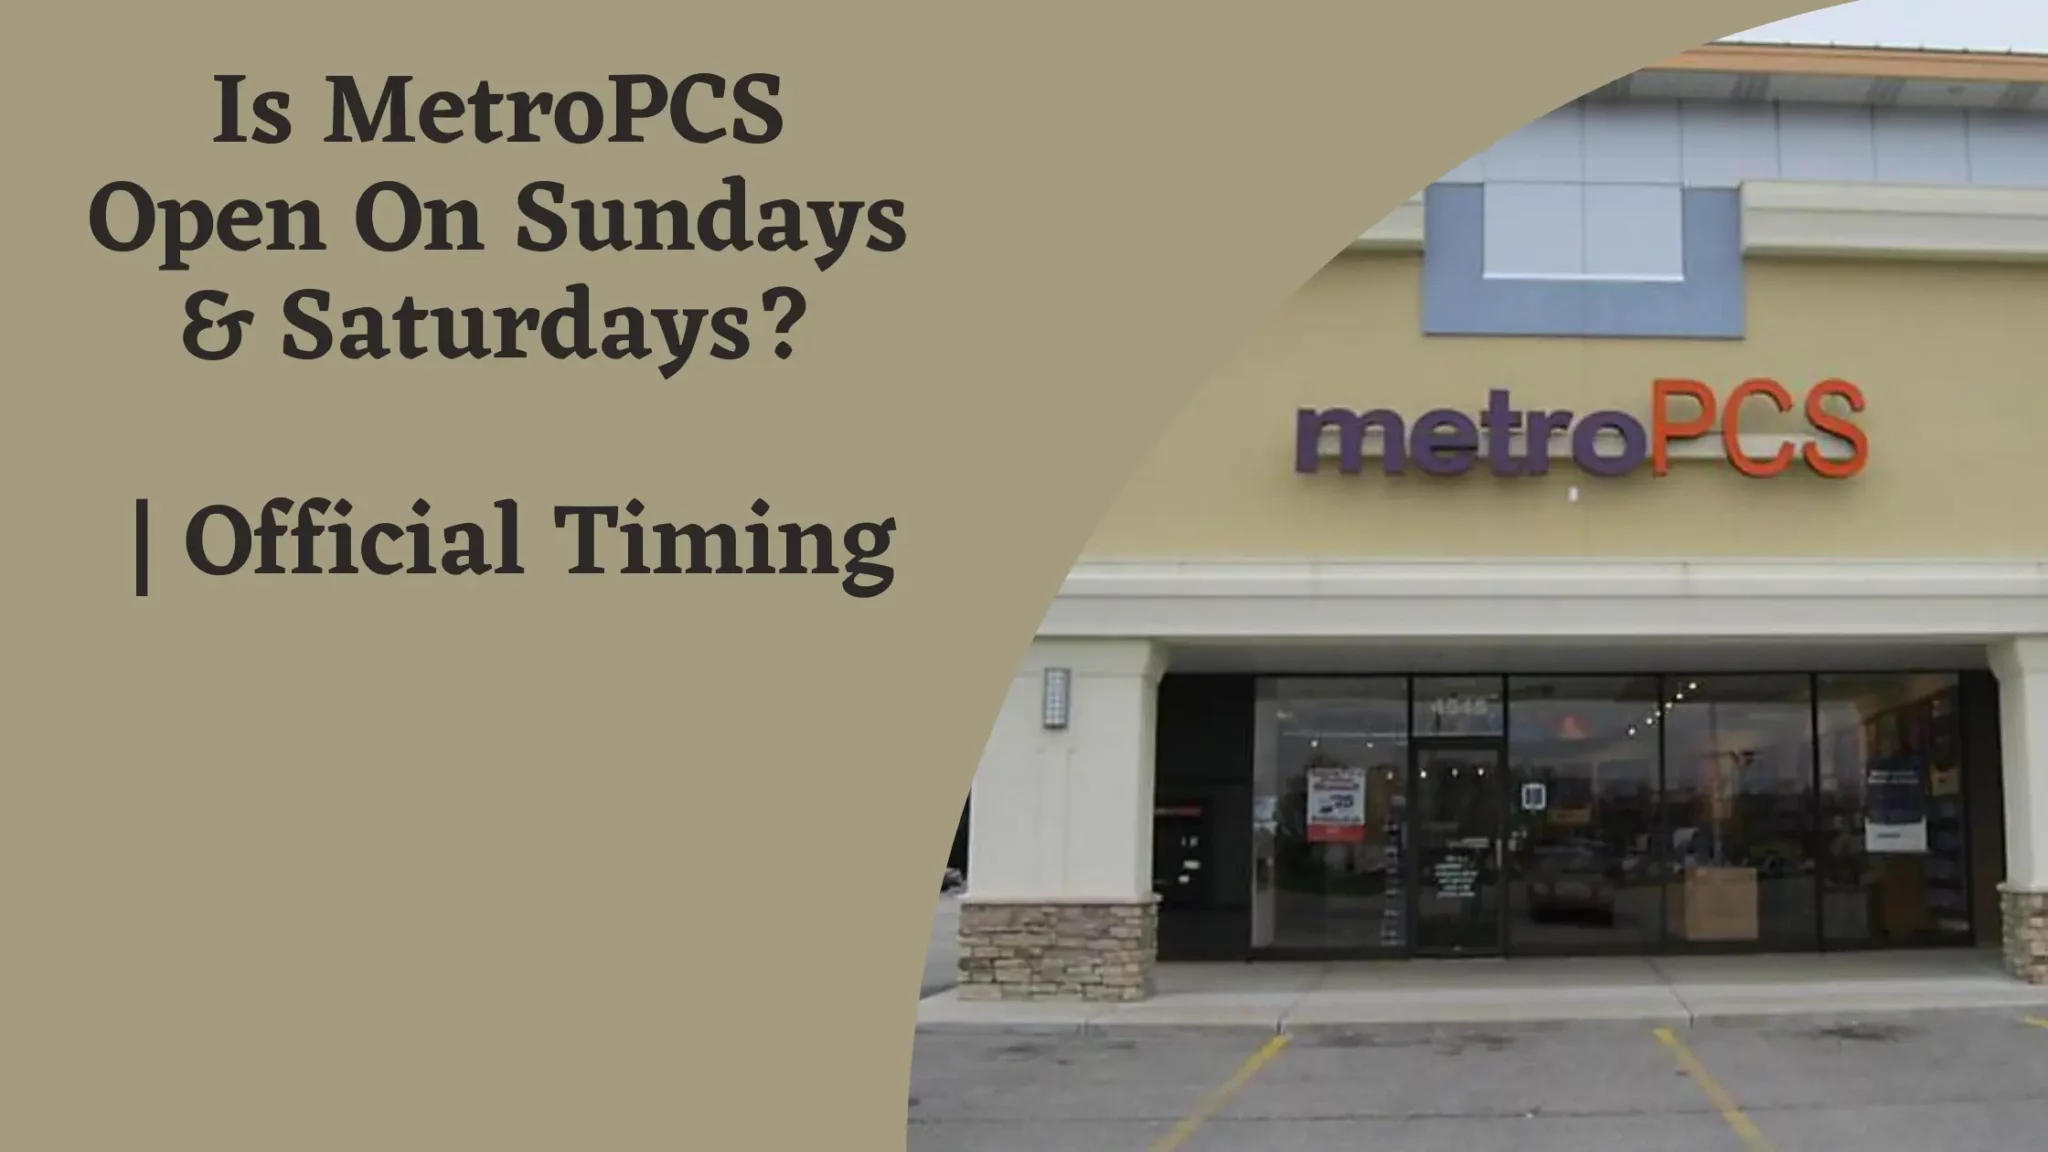 Is MetroPCS Open On Sundays & Saturdays?